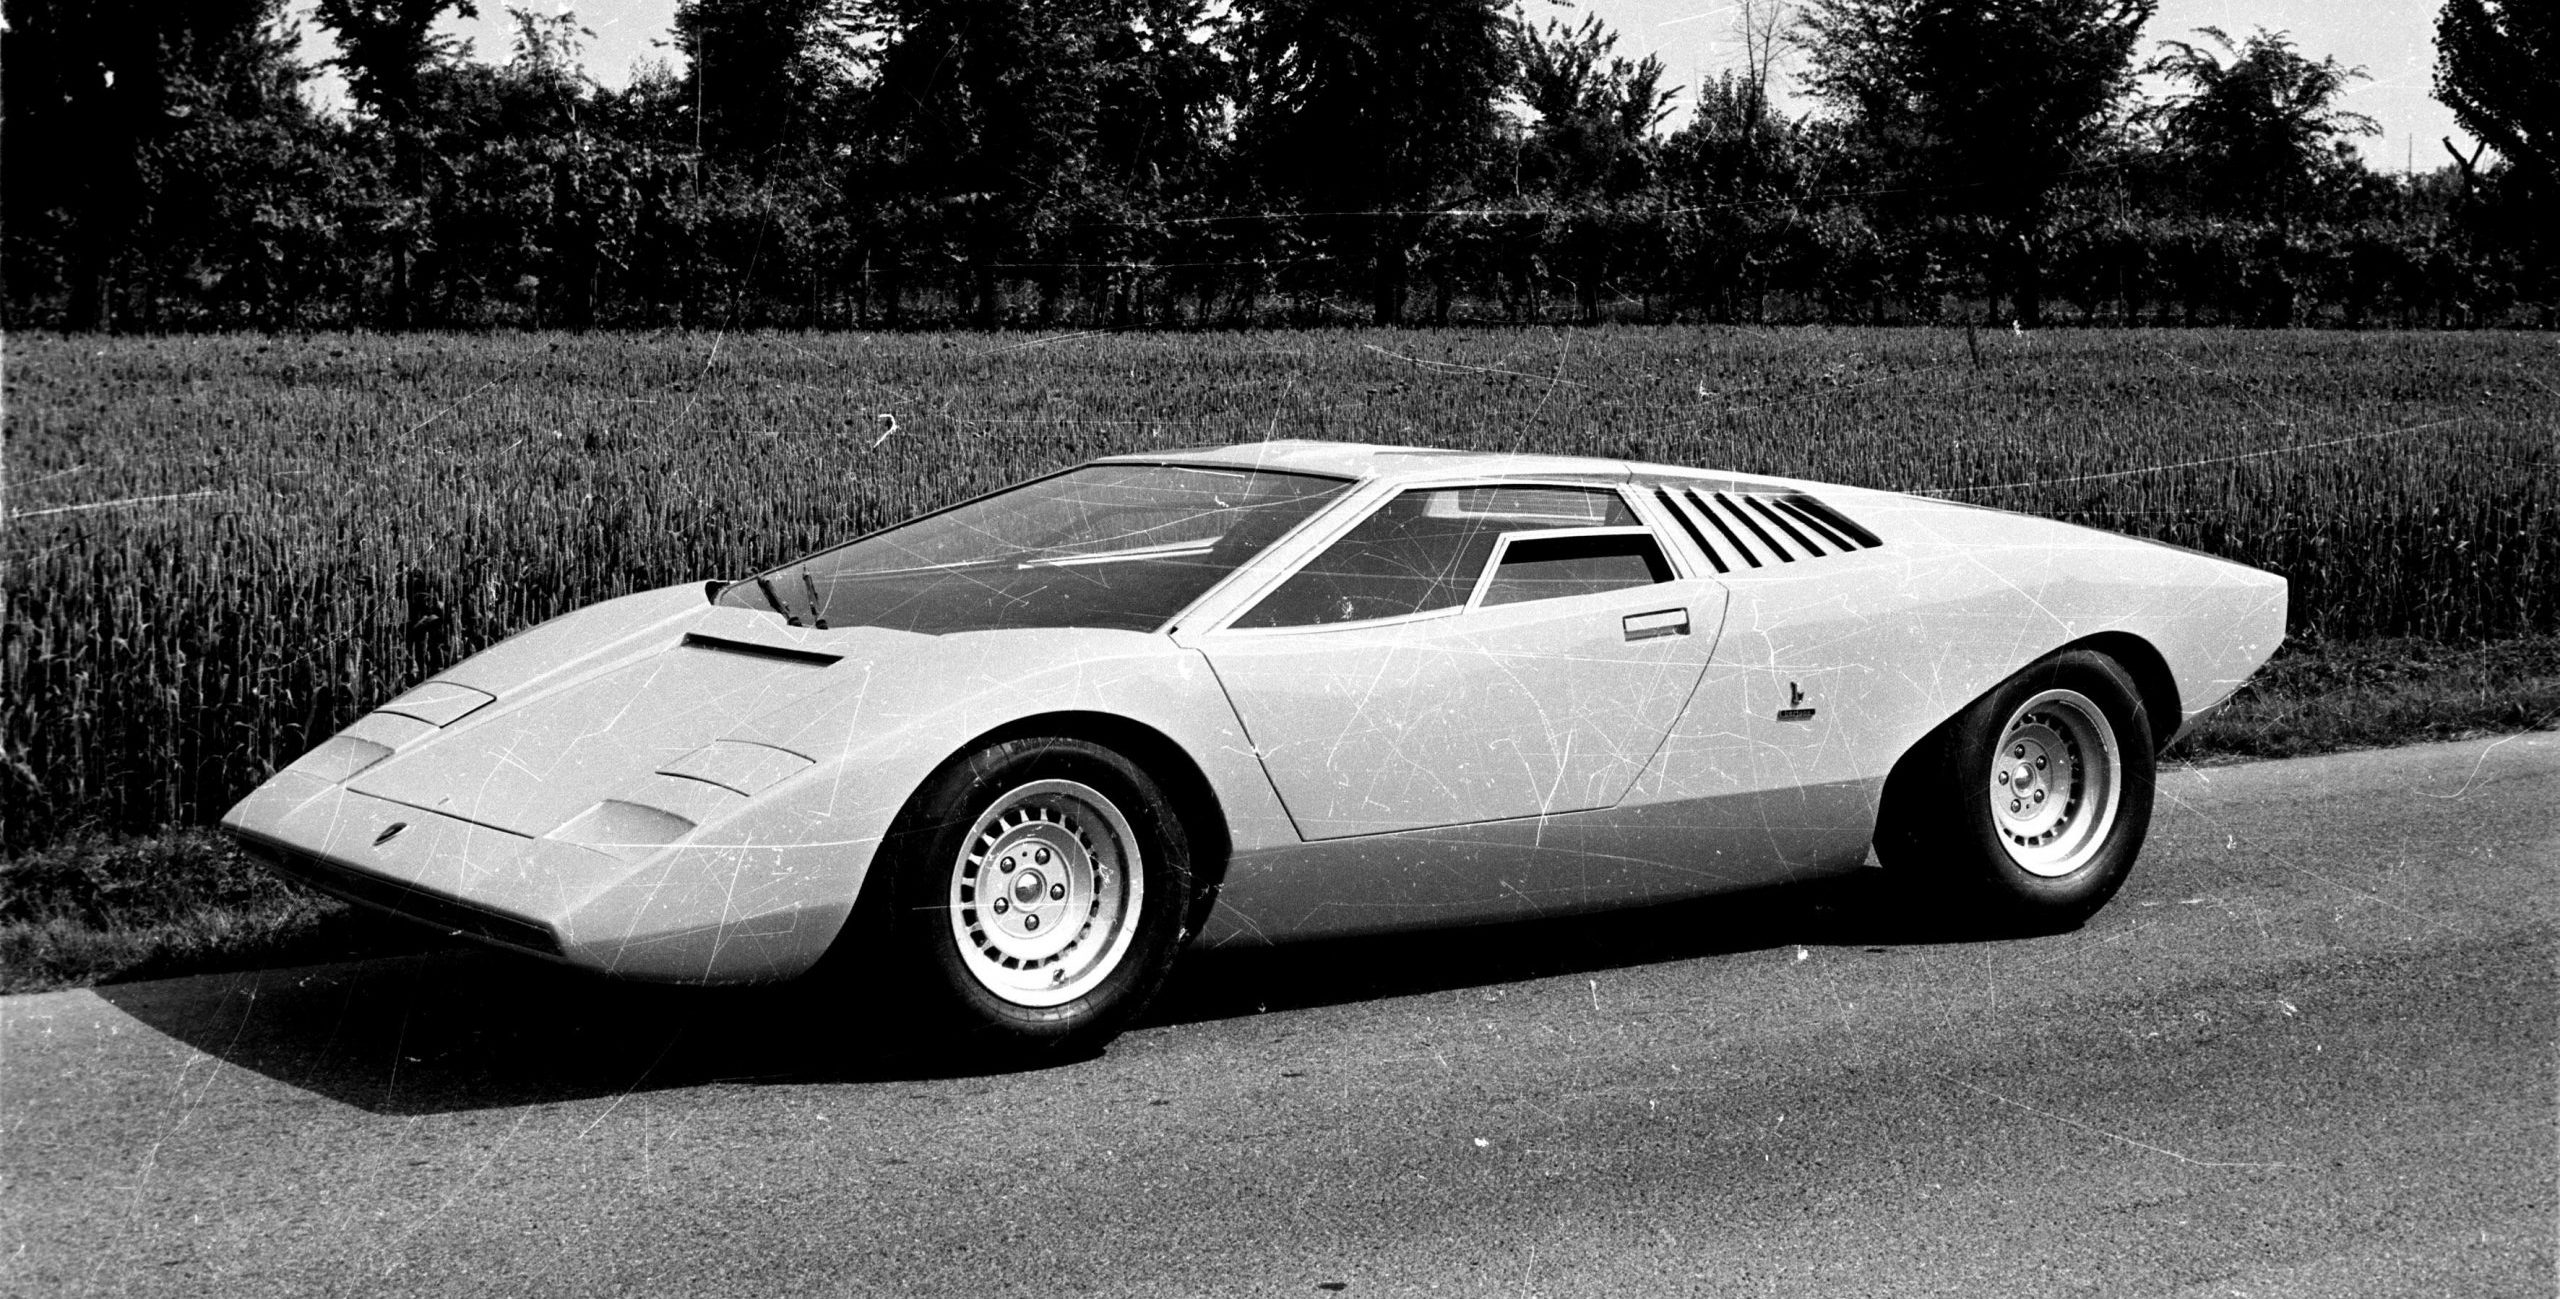 Tại sự kiện Brussels Motor Show vào năm 1969, chiếc Miura Roadster được trưng bày tại khu vực gian hàng Bertone đã thu hút mọi người ngay từ cái nhìn đầu tiên. Chiếc xe rất đẹp, nhưng vẫn cần một vài bước phát triển mà không thể thực hiện được khi đó. Do vậy, Lamborghini đã bắt tay vào hai dự án mới: một chiếc bốn chỗ đầu tiên (dựa trên nguyên mẫu Espada của năm 1967) và một chiếc xe loại nhỏ (Urraco – được phát triển vào năm 1968), nguyên mẫu đầu tiên được trình làng vào năm 1968. Vào năm 1981, phiên bản bốn cửa mang tên Faena – được sản xuất bởi Carrozzeria Frua dựa trên sự phát triển của chiếc Espada. Mọi người tại Sant’Agata Bolognese khi đó đã nghĩ về thị trường cho một chiếc Lamborghini bốn cửa.